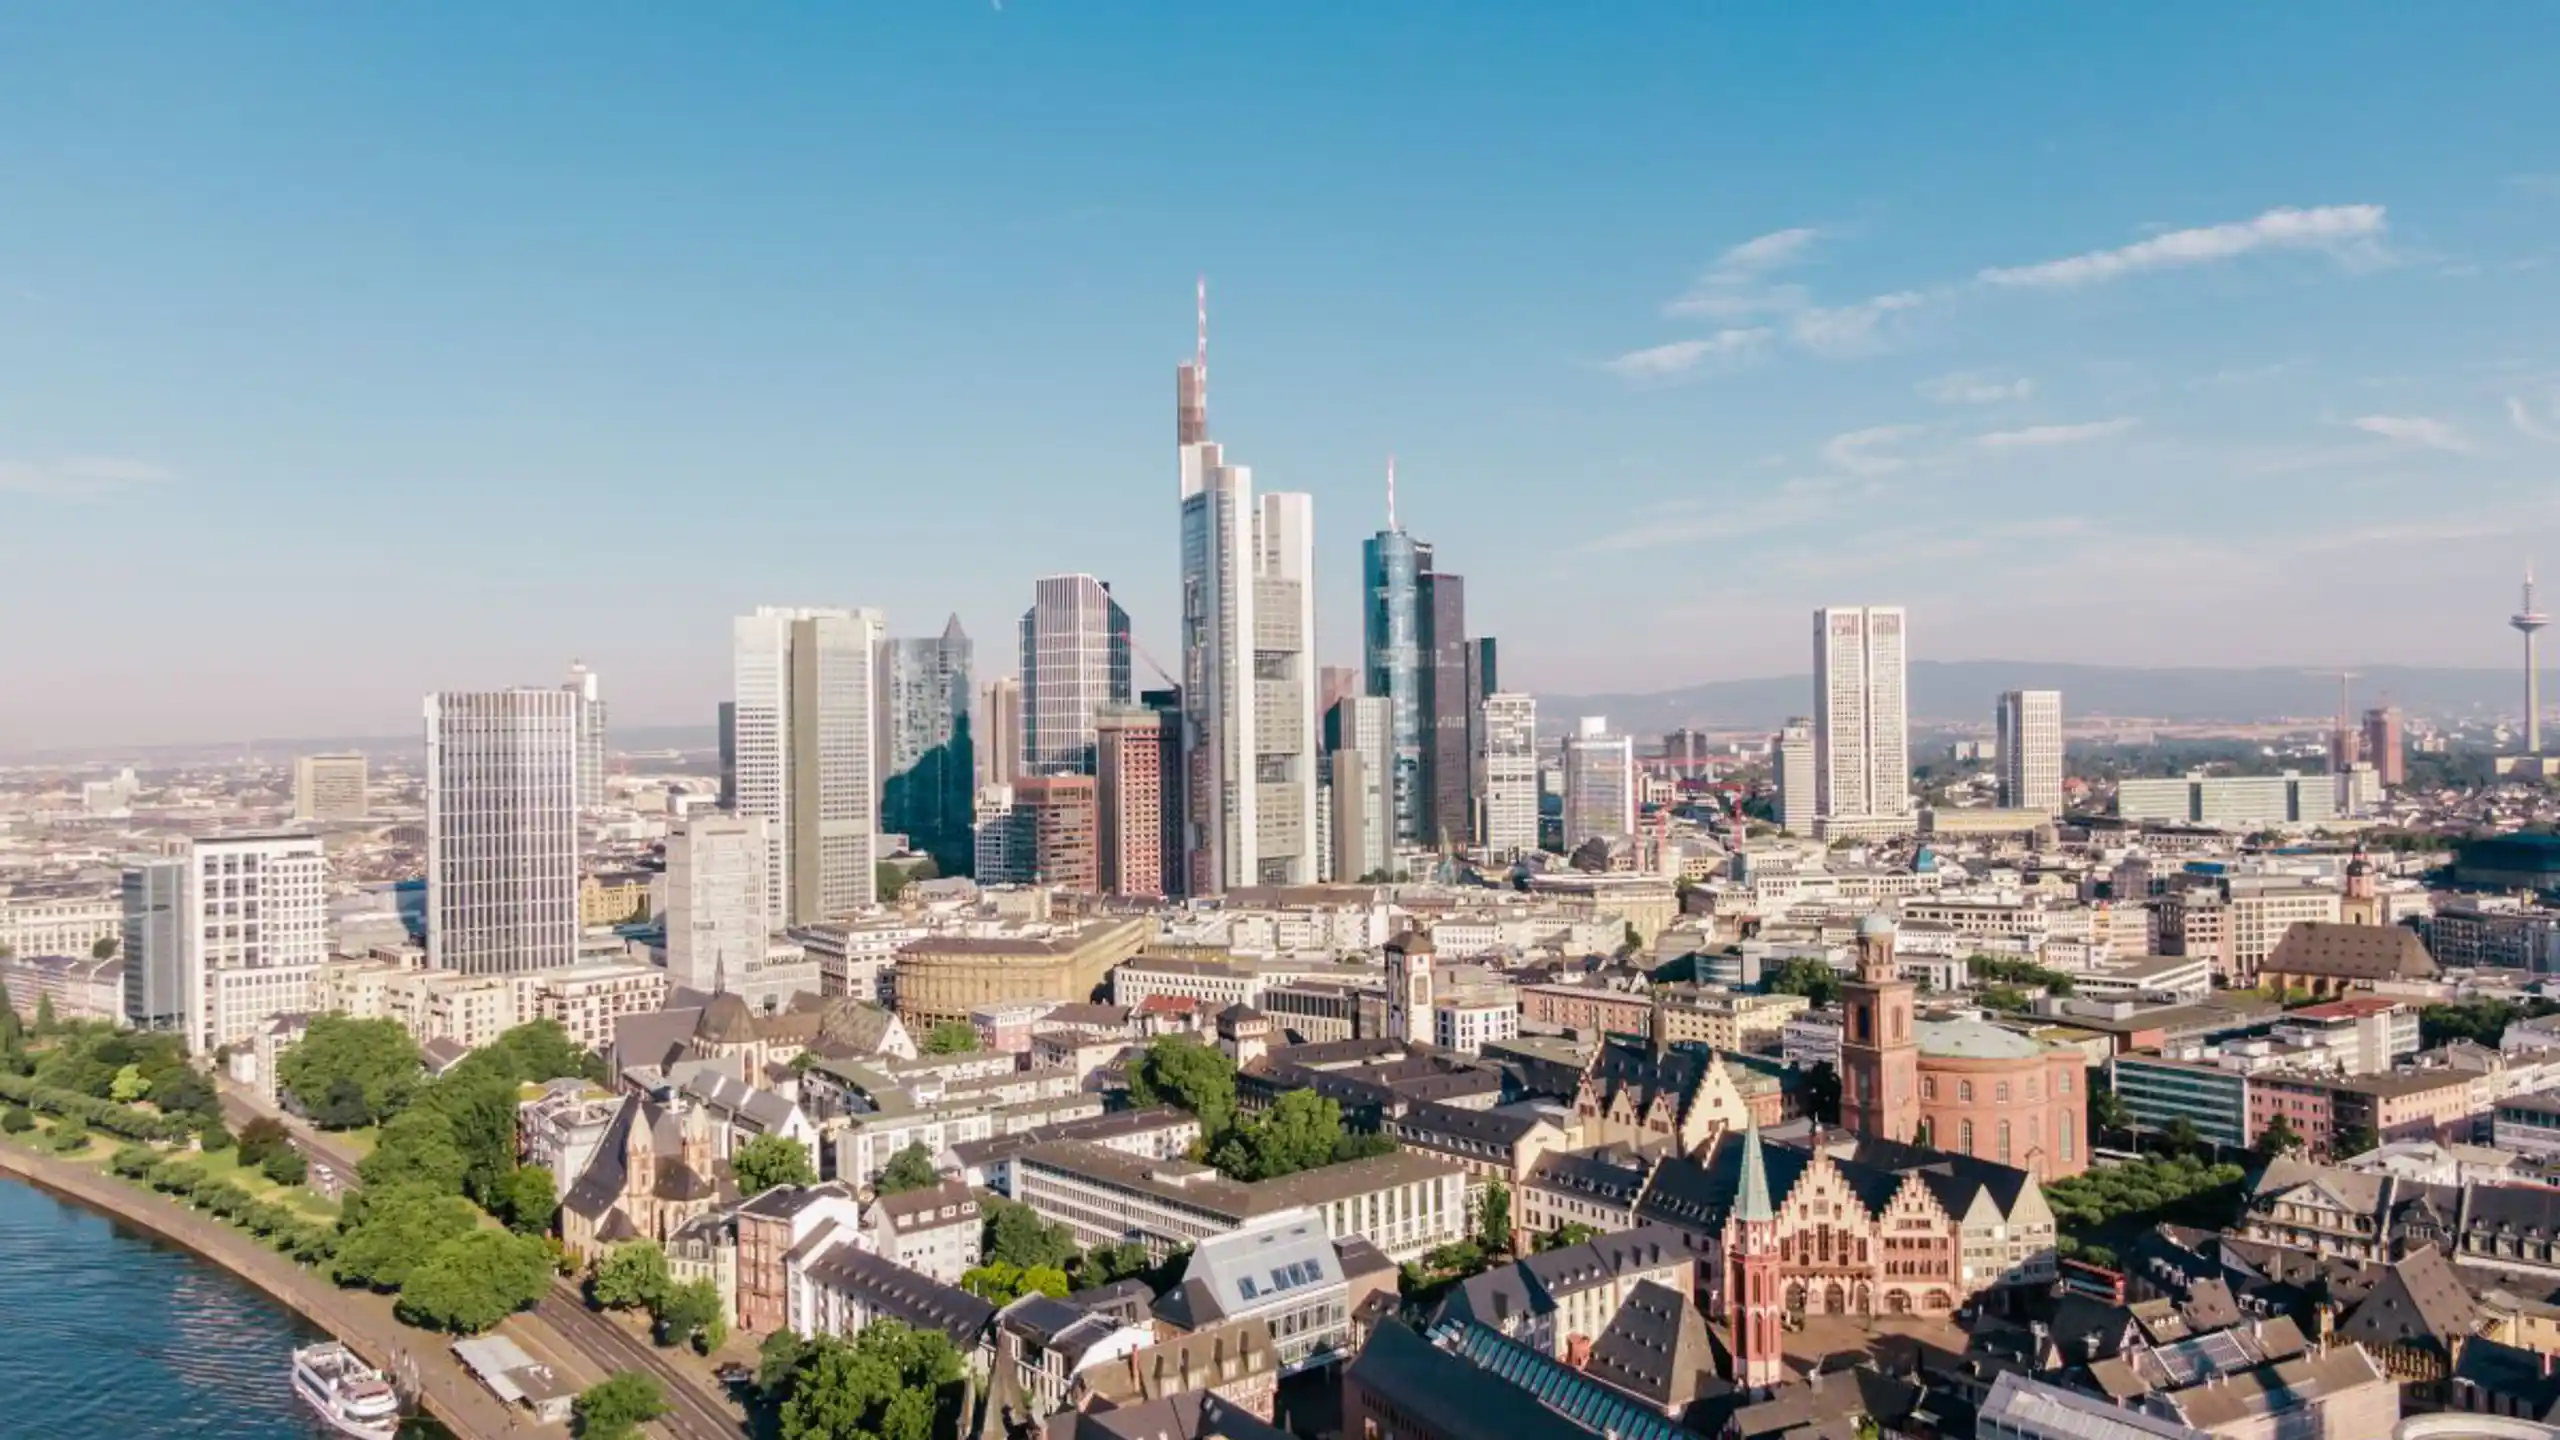 Aerial Shot Of Skyscrapers In Frankfurt Germany Wi 2023 11 27 05 04 44 Utc (1)